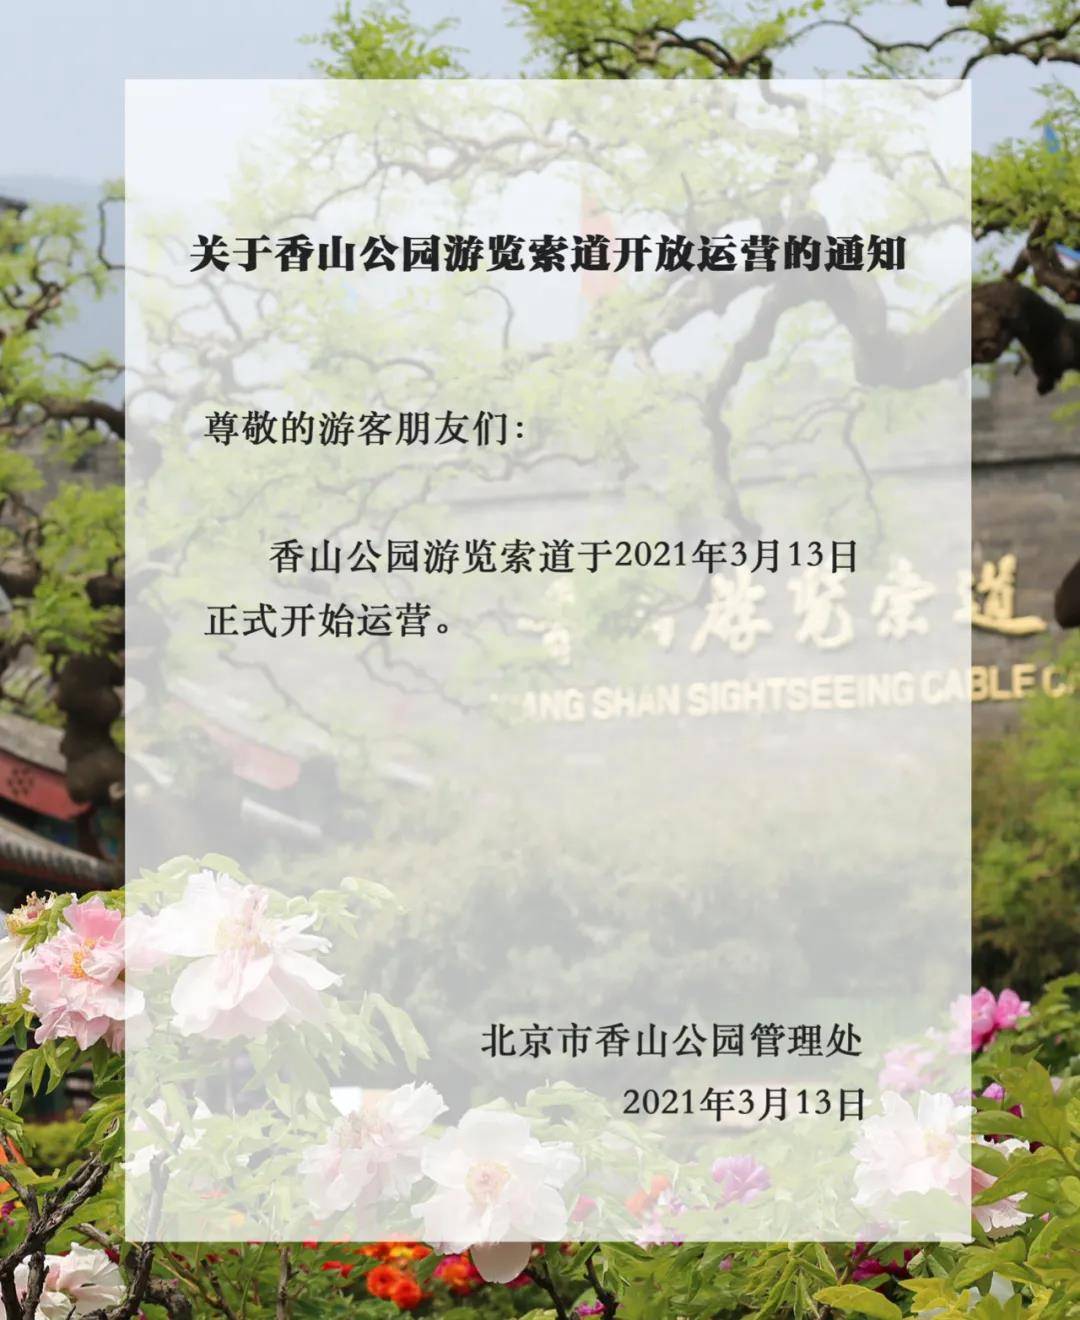 香山公园游览索道13日起开放运营